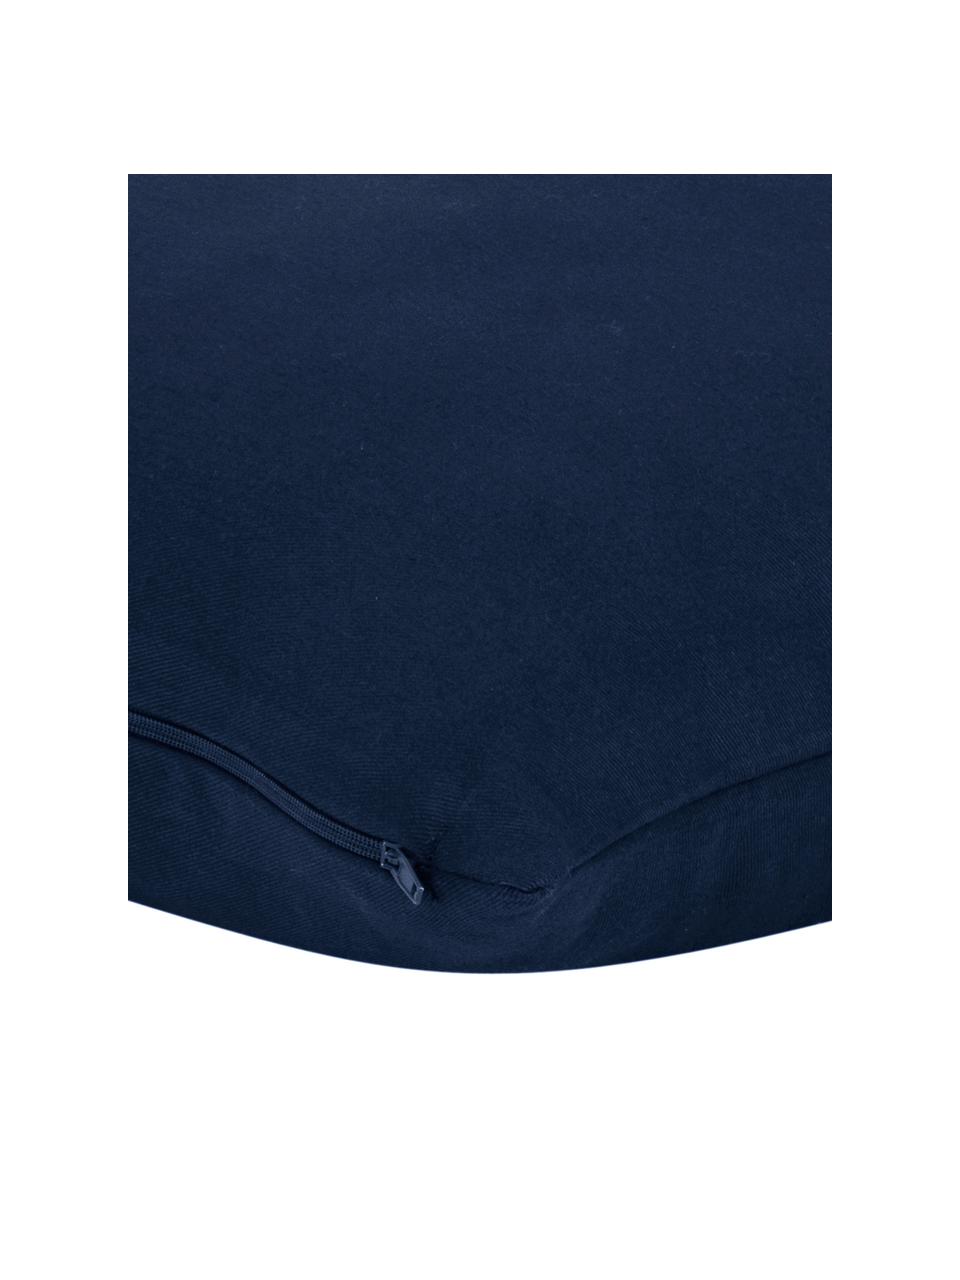 Katoenen kussenhoes Mads in marineblauw, 100% katoen, Marineblauw, 30 x 50 cm